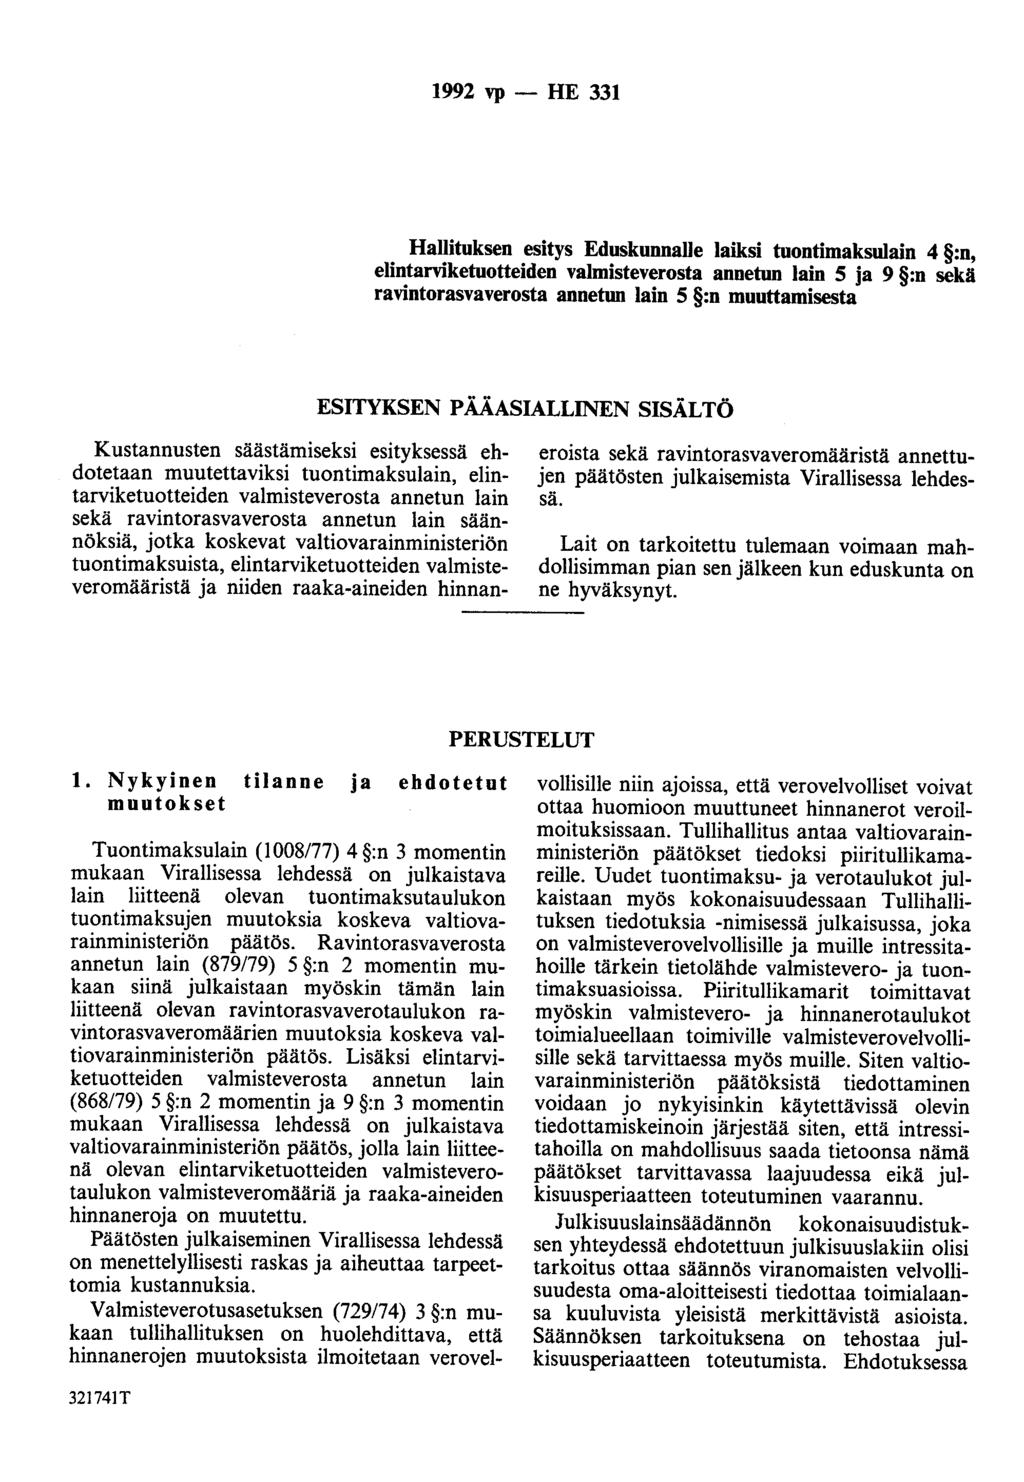 1992 vp - HE 331 Hallituksen esitys Eduskunnalle laiksi tuontimaksulain 4 :n, elintarviketuotteiden valmisteverosta annetun lain 5 ja 9 :n sekä ravintorasvaverosta annetun lain 5 :n muuttamisesta